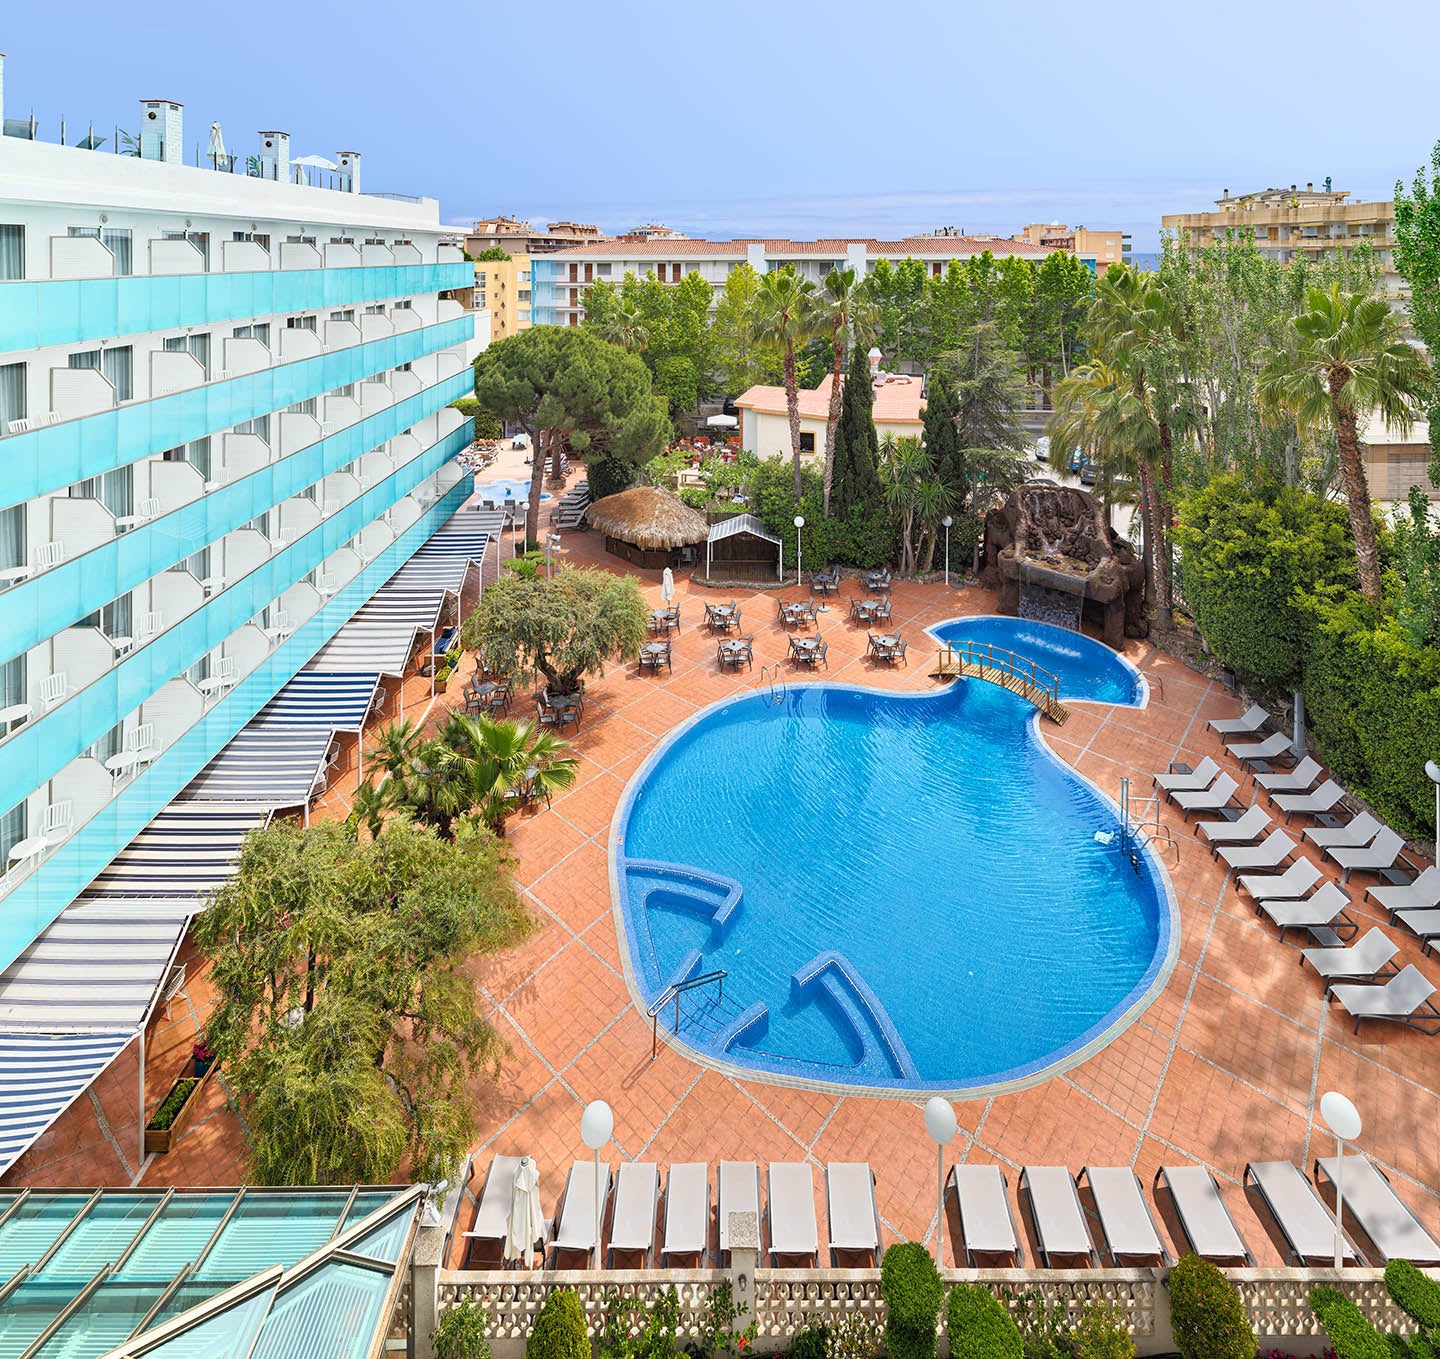 Vista general de l'hotel i la piscina